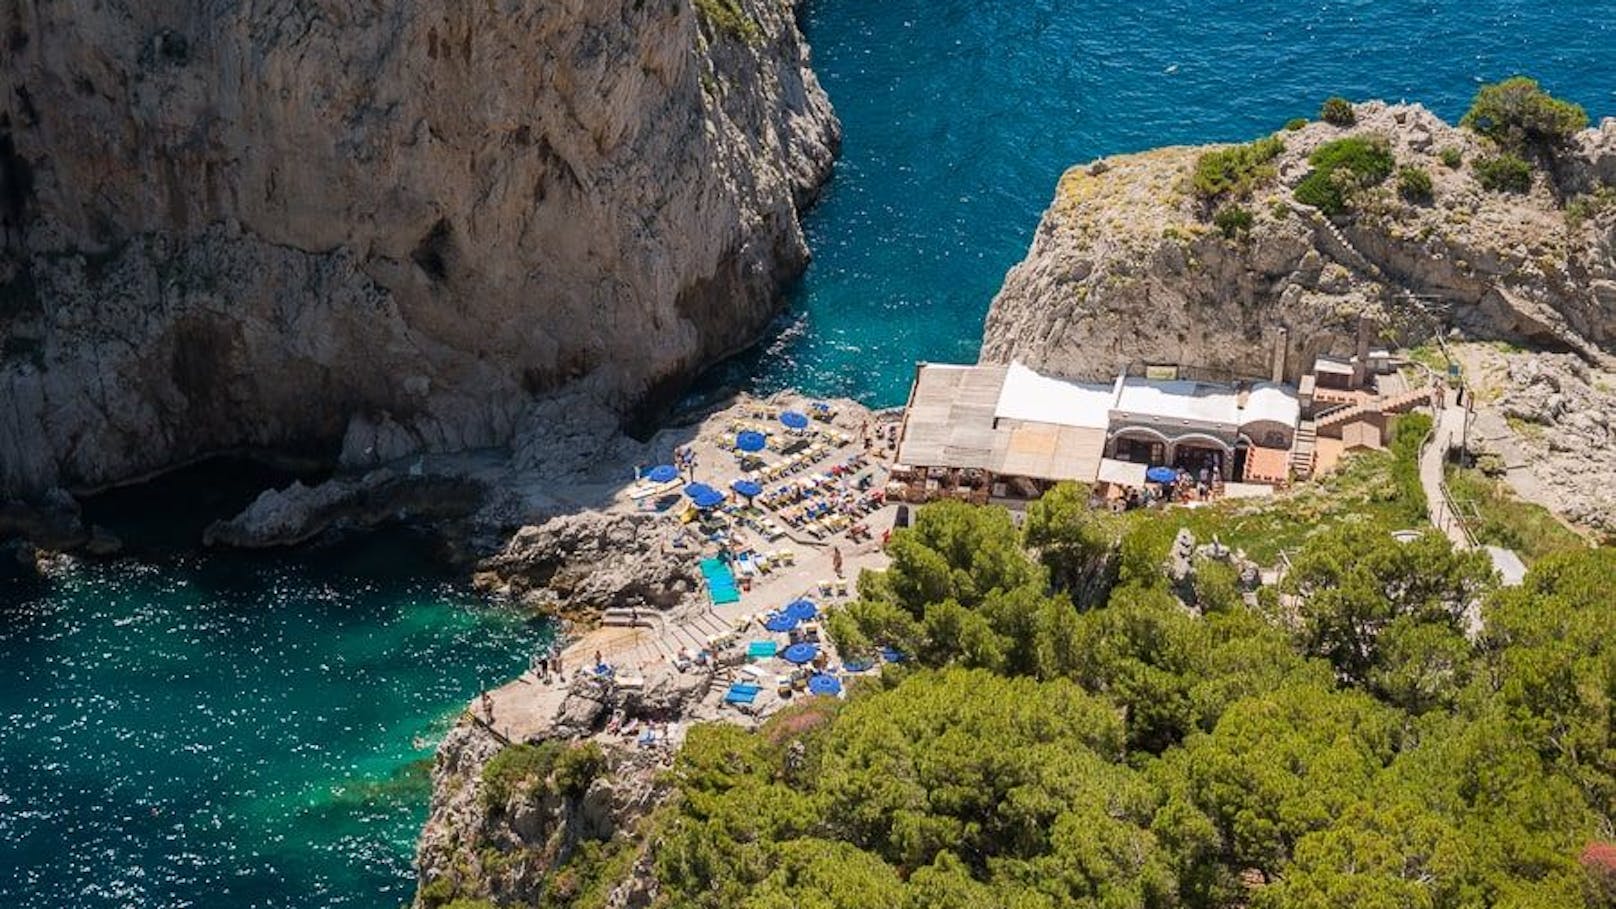 Auf Capri zahlt man pro Person 100 Euro Eintritt zum&nbsp;<a href="https://www.instagram.com/da_luigi_ai_faraglioni/?hl=de">Da Luigi Beach Club</a>. Dafür bekommt Sonnenliege oder Liegestuhl und eine Konsumation im Restaurant. Der Sonnenschirm kostet 15 Euro extra.